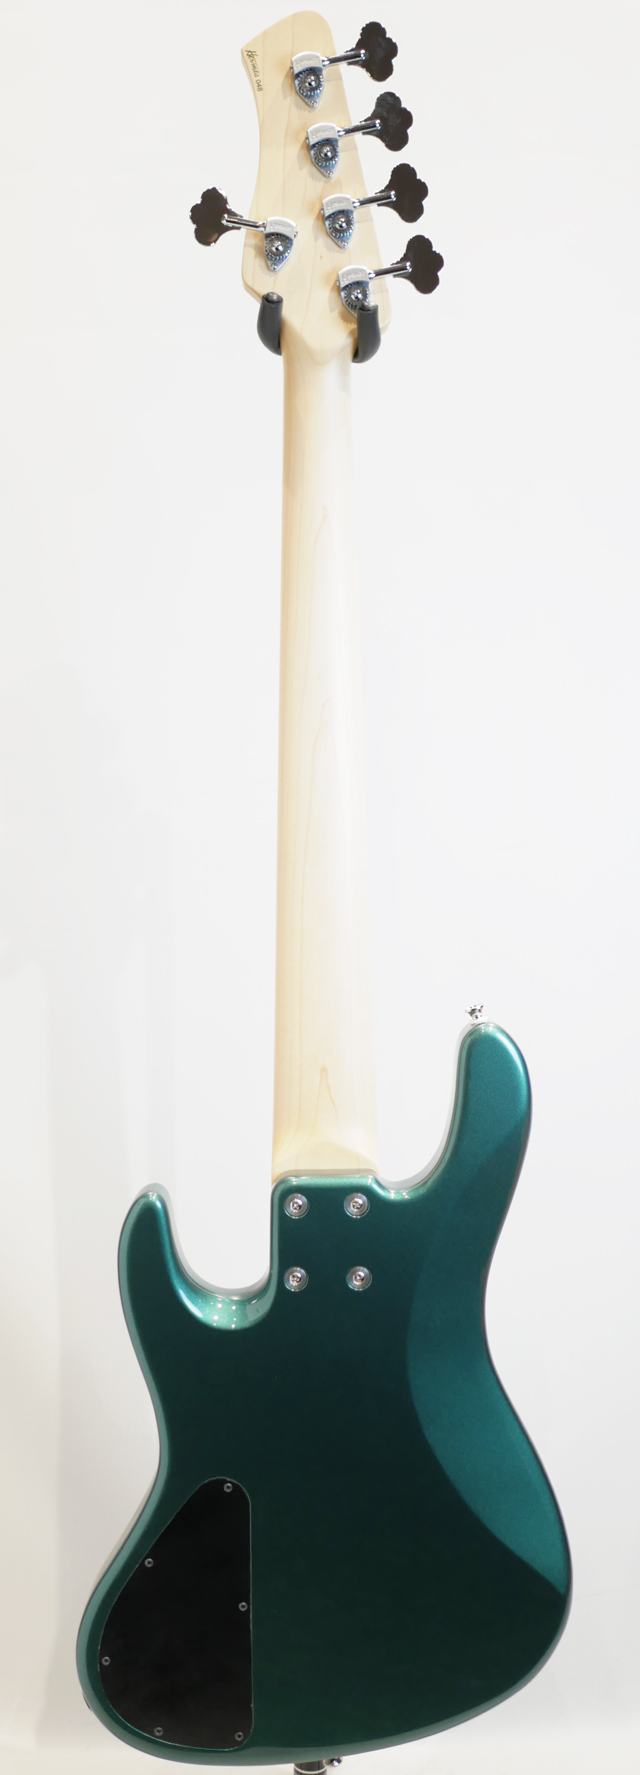 Kikuchi Guitars Hermes Series MV5 / British Racing Green サブ画像3